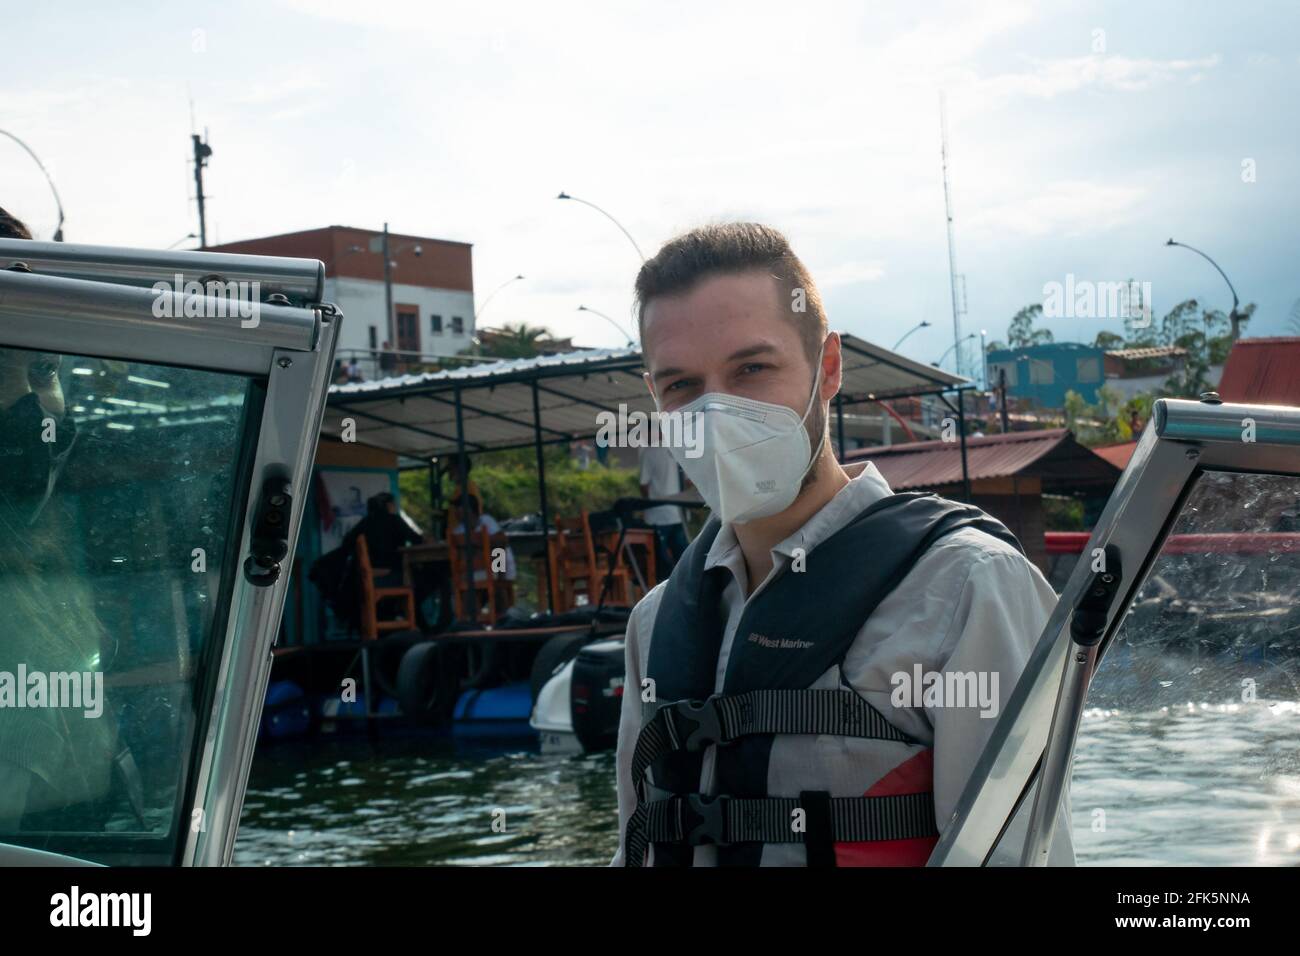 Uomo biondo caucasico guardando la macchina fotografica in una barca Nel serbatoio dell'acqua Foto Stock